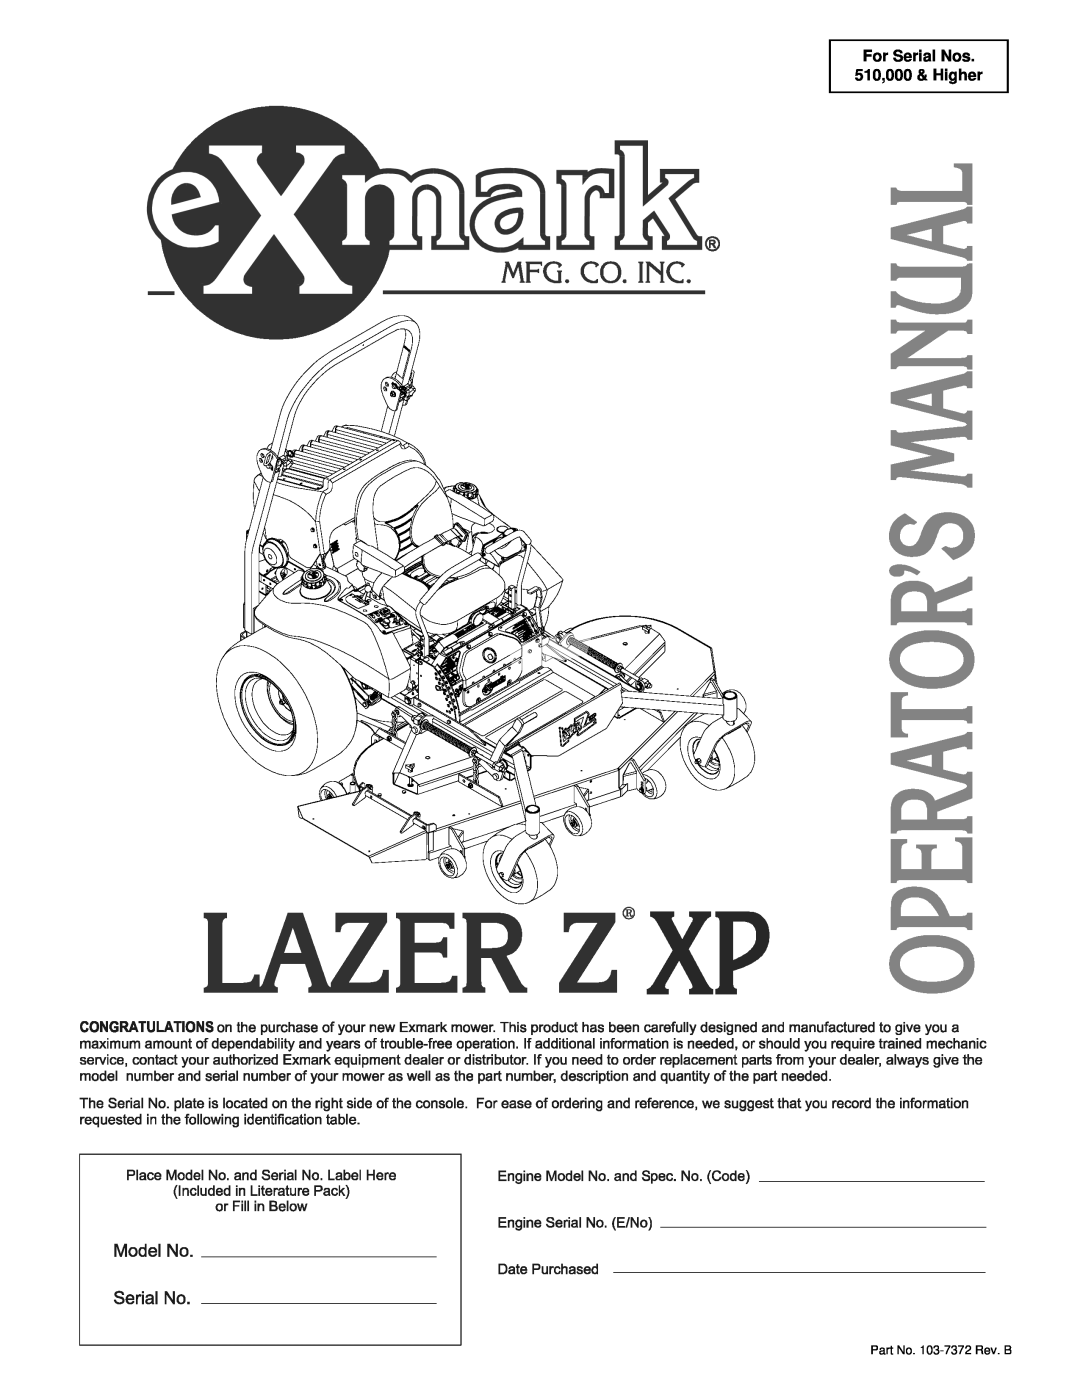 Exmark Lazer Z XP manual For Serial Nos 510,000 & Higher, Part No. 103-7372 Rev. B 